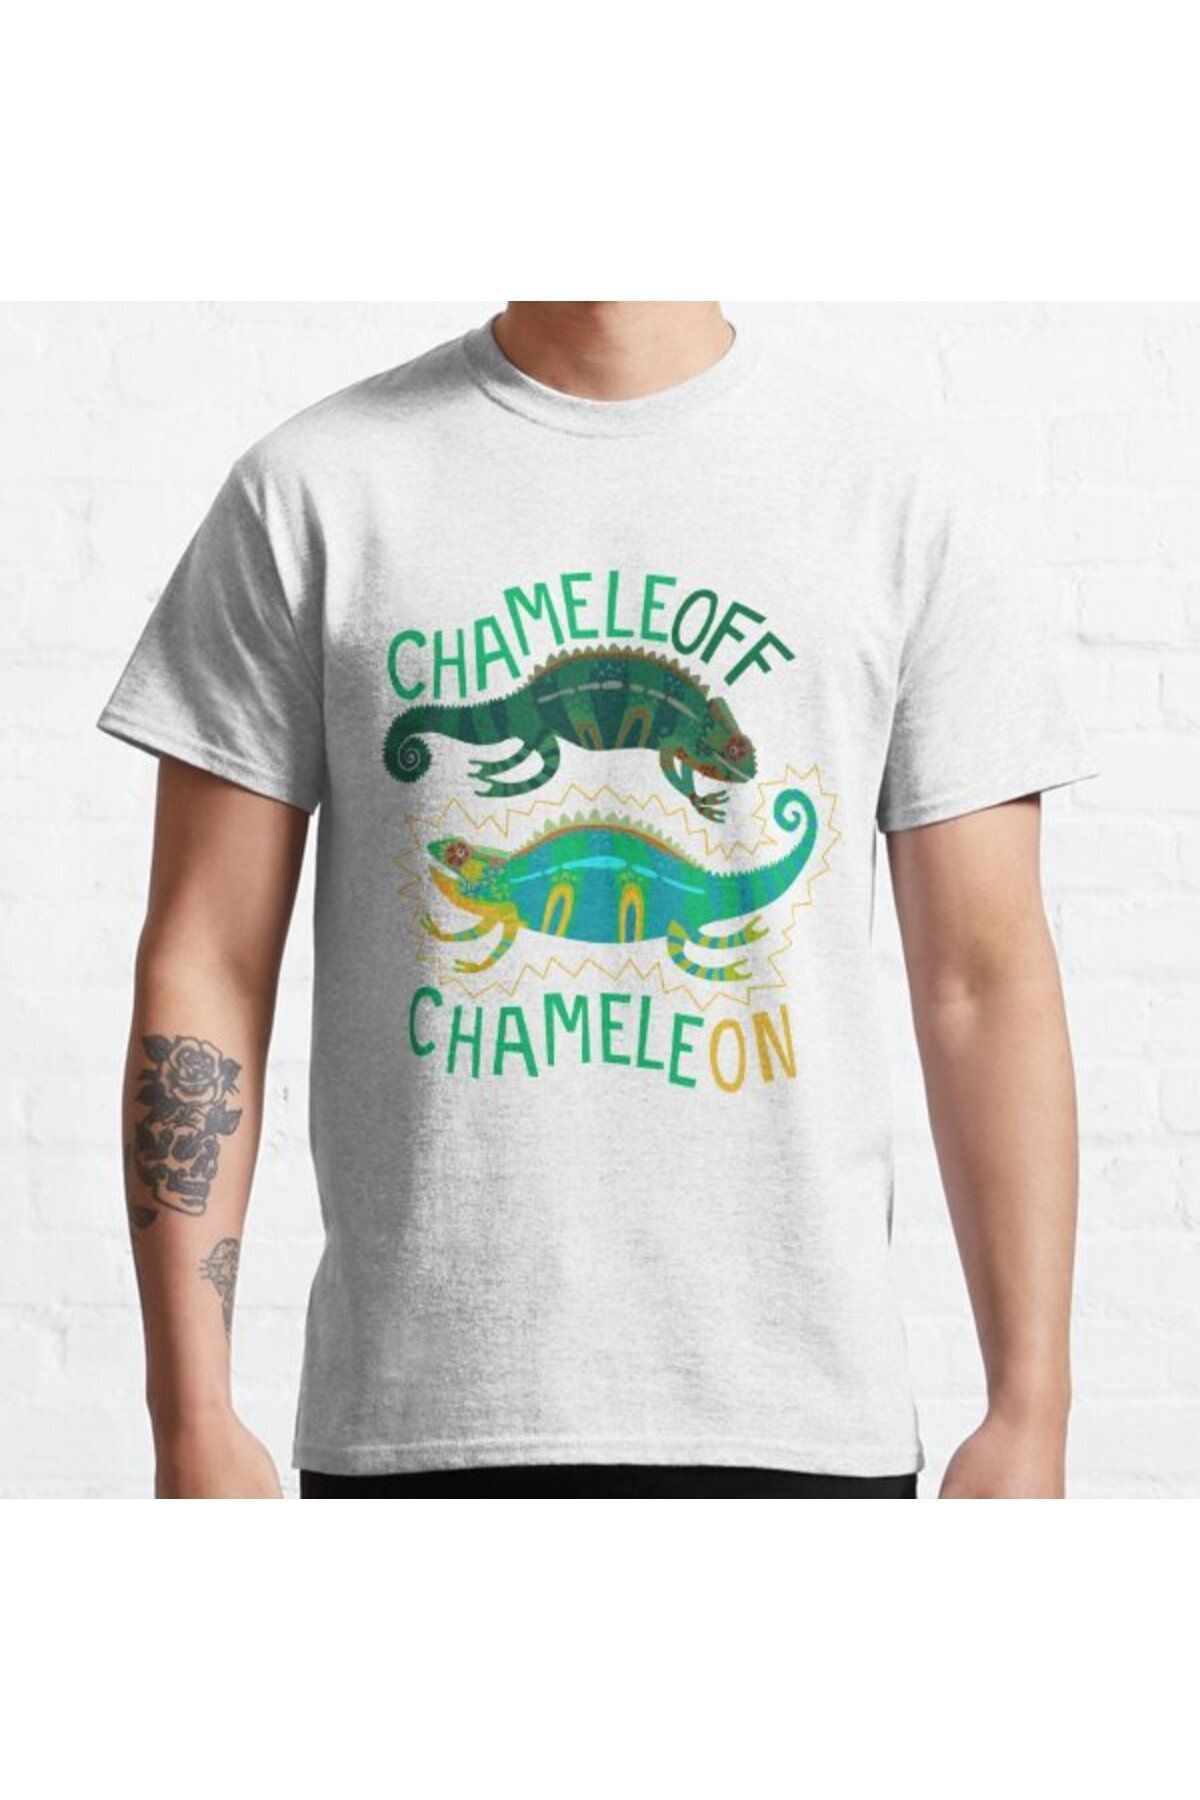 ZOKAWEAR Bol Kalıp Unisex Chameleoff, Chameleon Tasarım Baskılı Tshirt